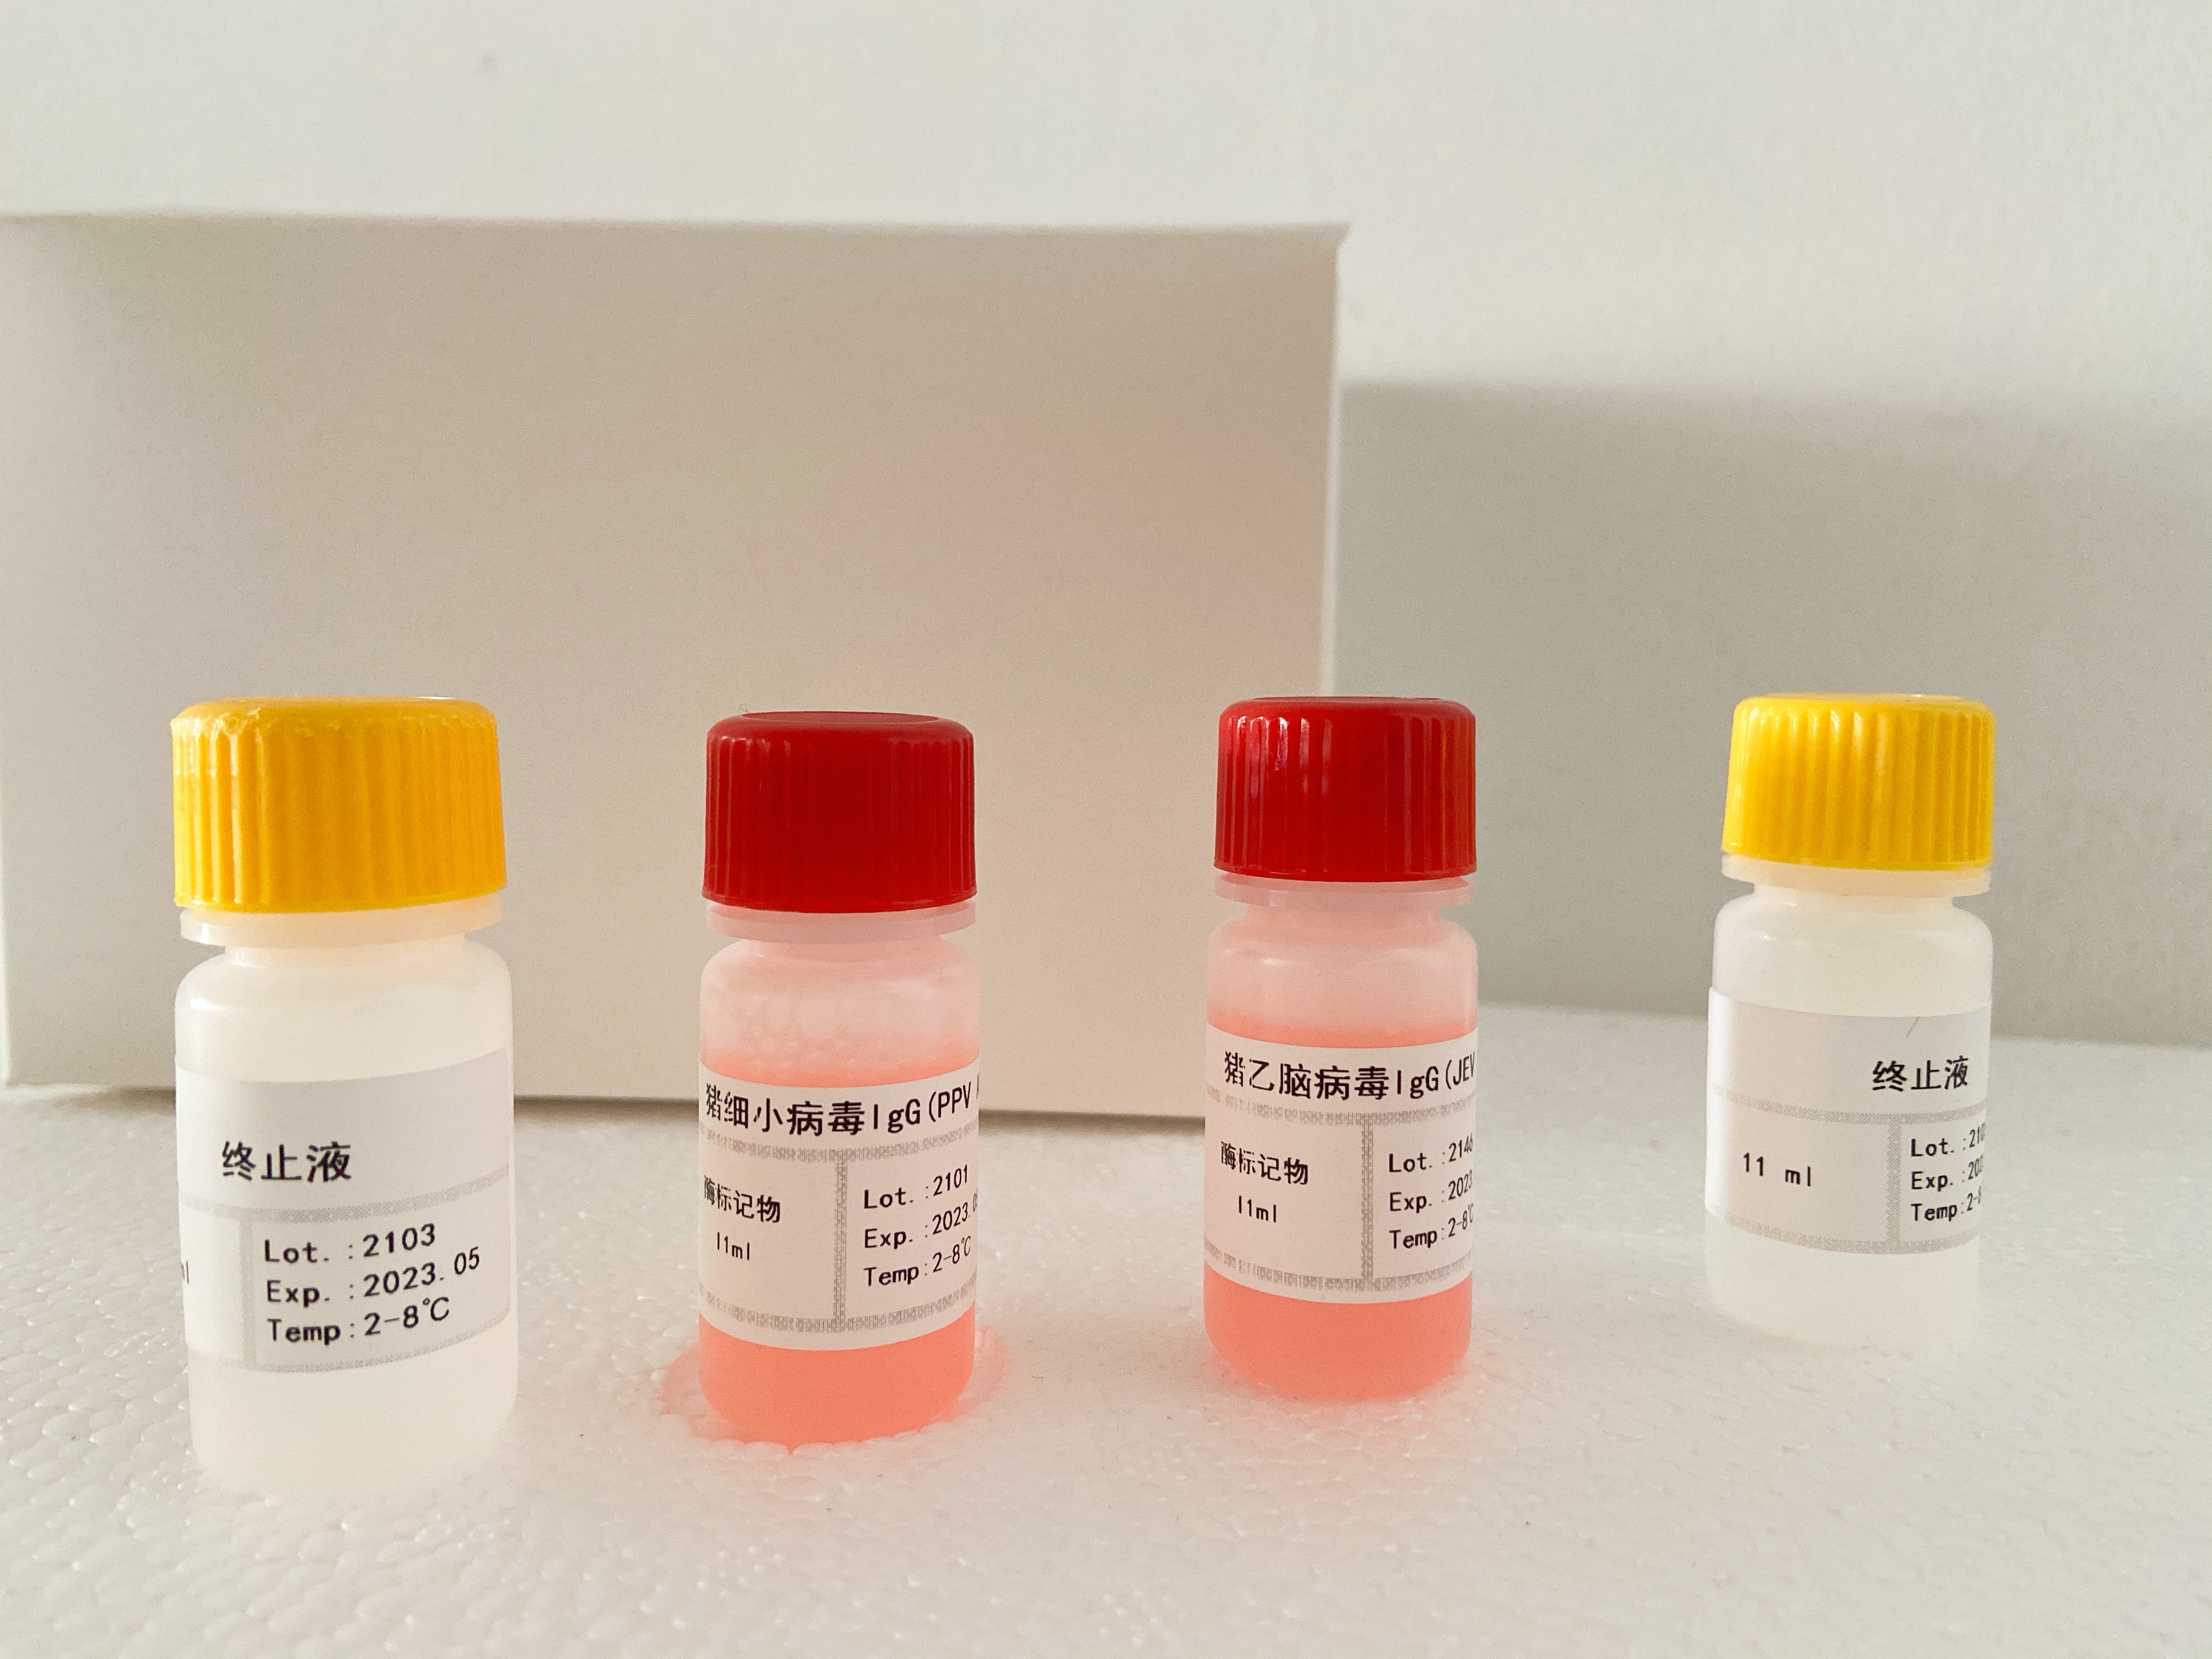 猪活化蛋白C(APC)检测试剂盒